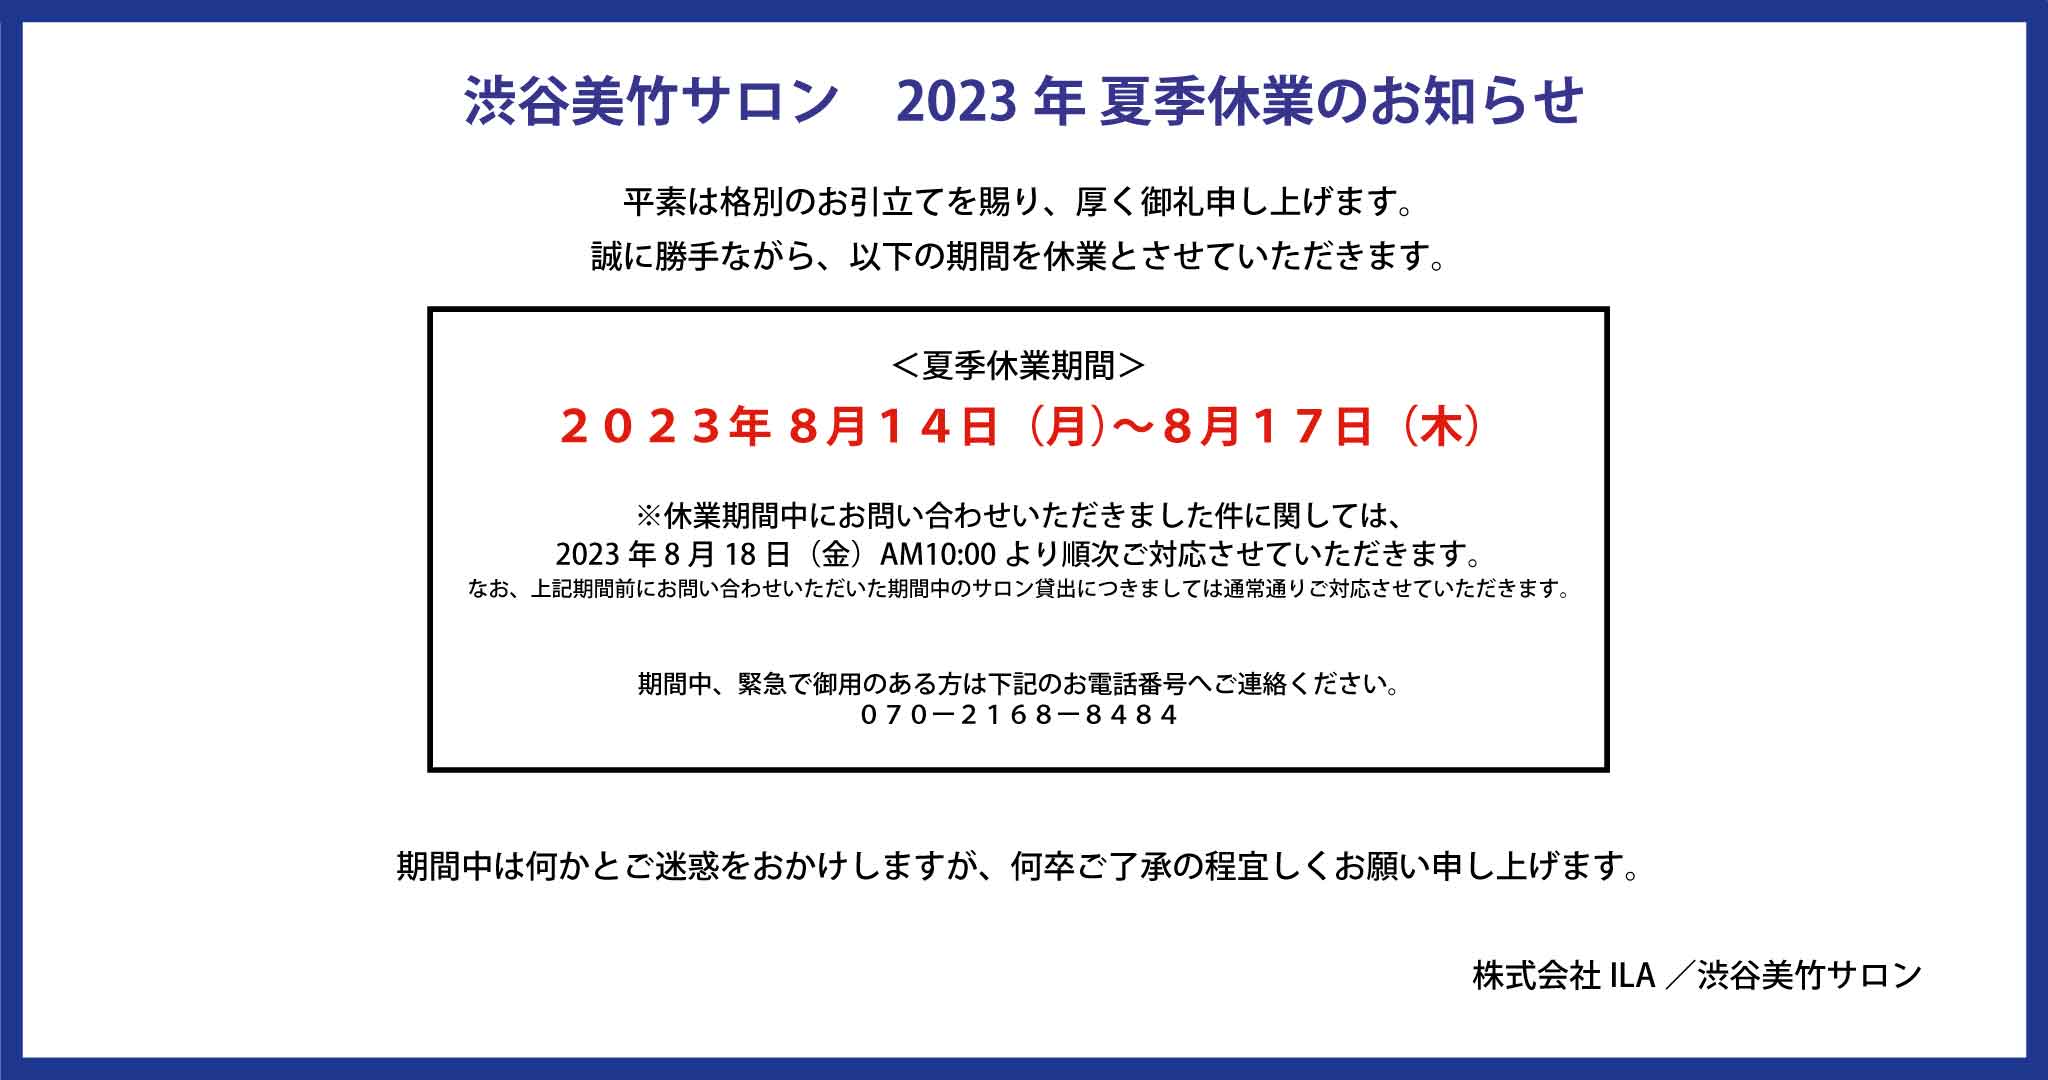 【お知らせ】2023年 夏季休業のお知らせ